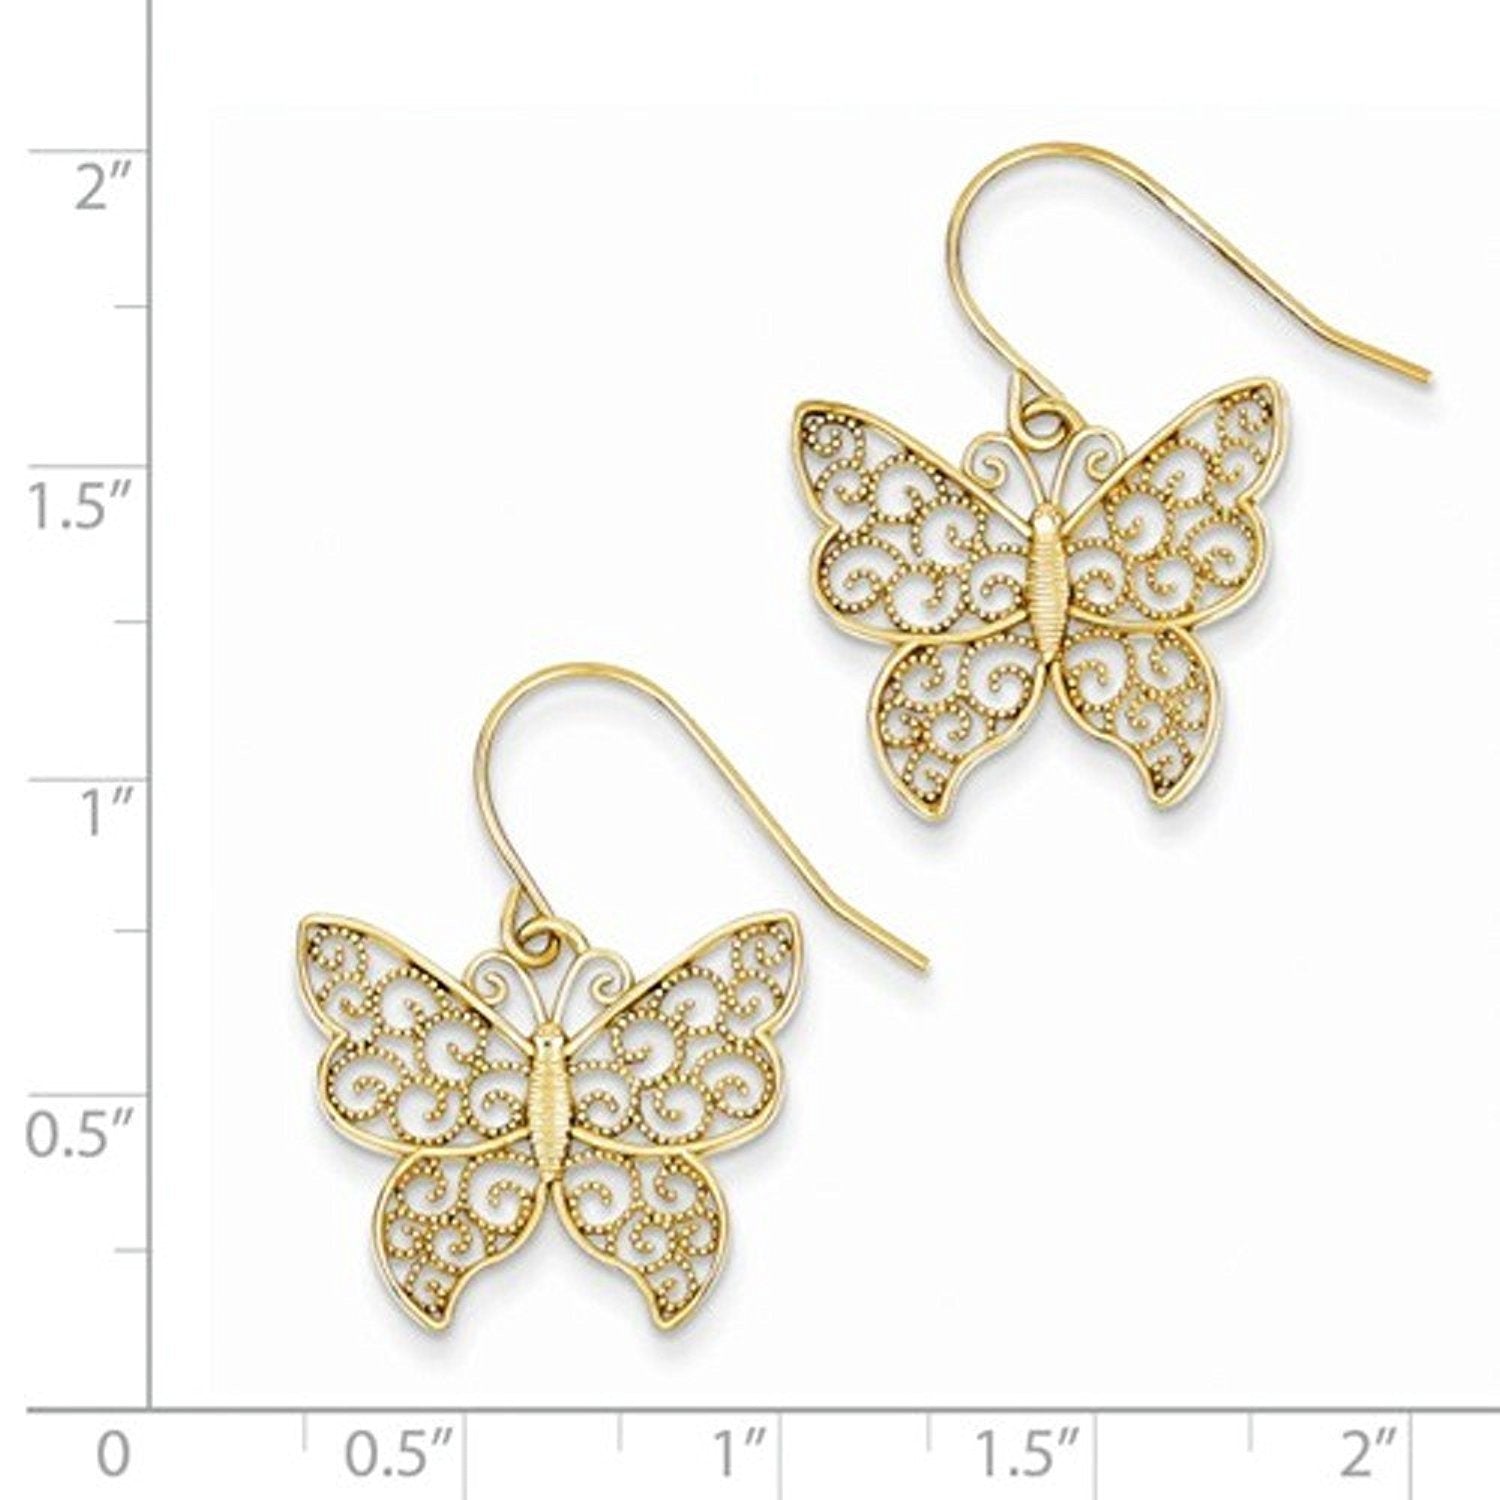 14k Yellow Gold Butterfly Shepherd Hook Dangle Earrings